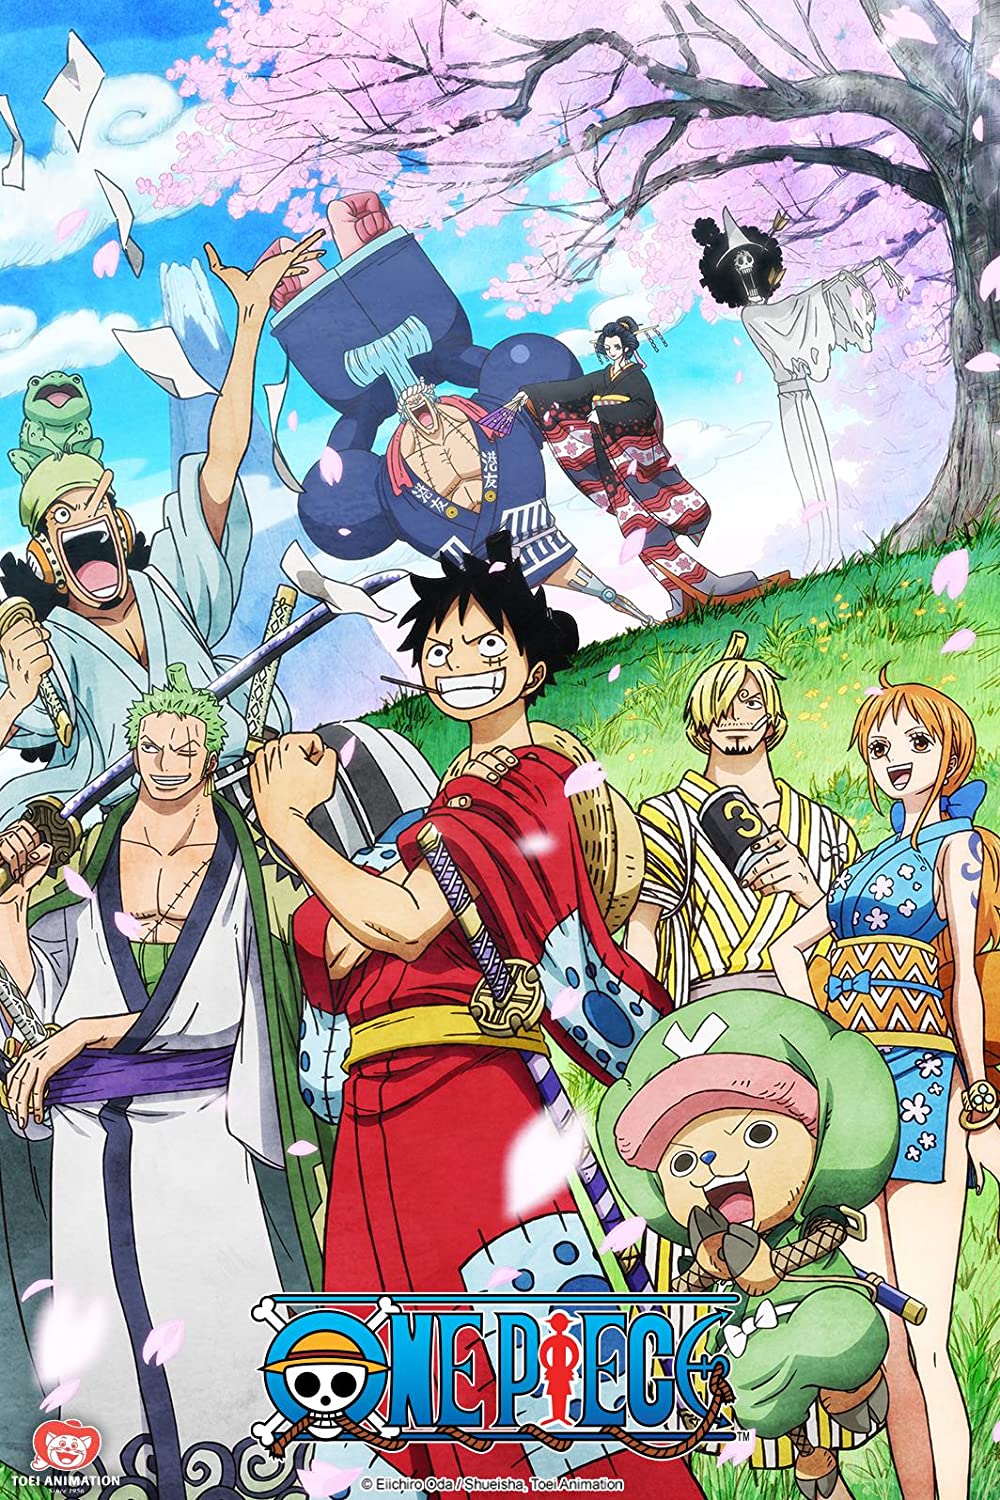 ดูหนังออนไลน์ฟรี One Piece Season 1 EP.6 วันพีช อิสท์บลู ซีซั่น 1  ตอนที่ 6